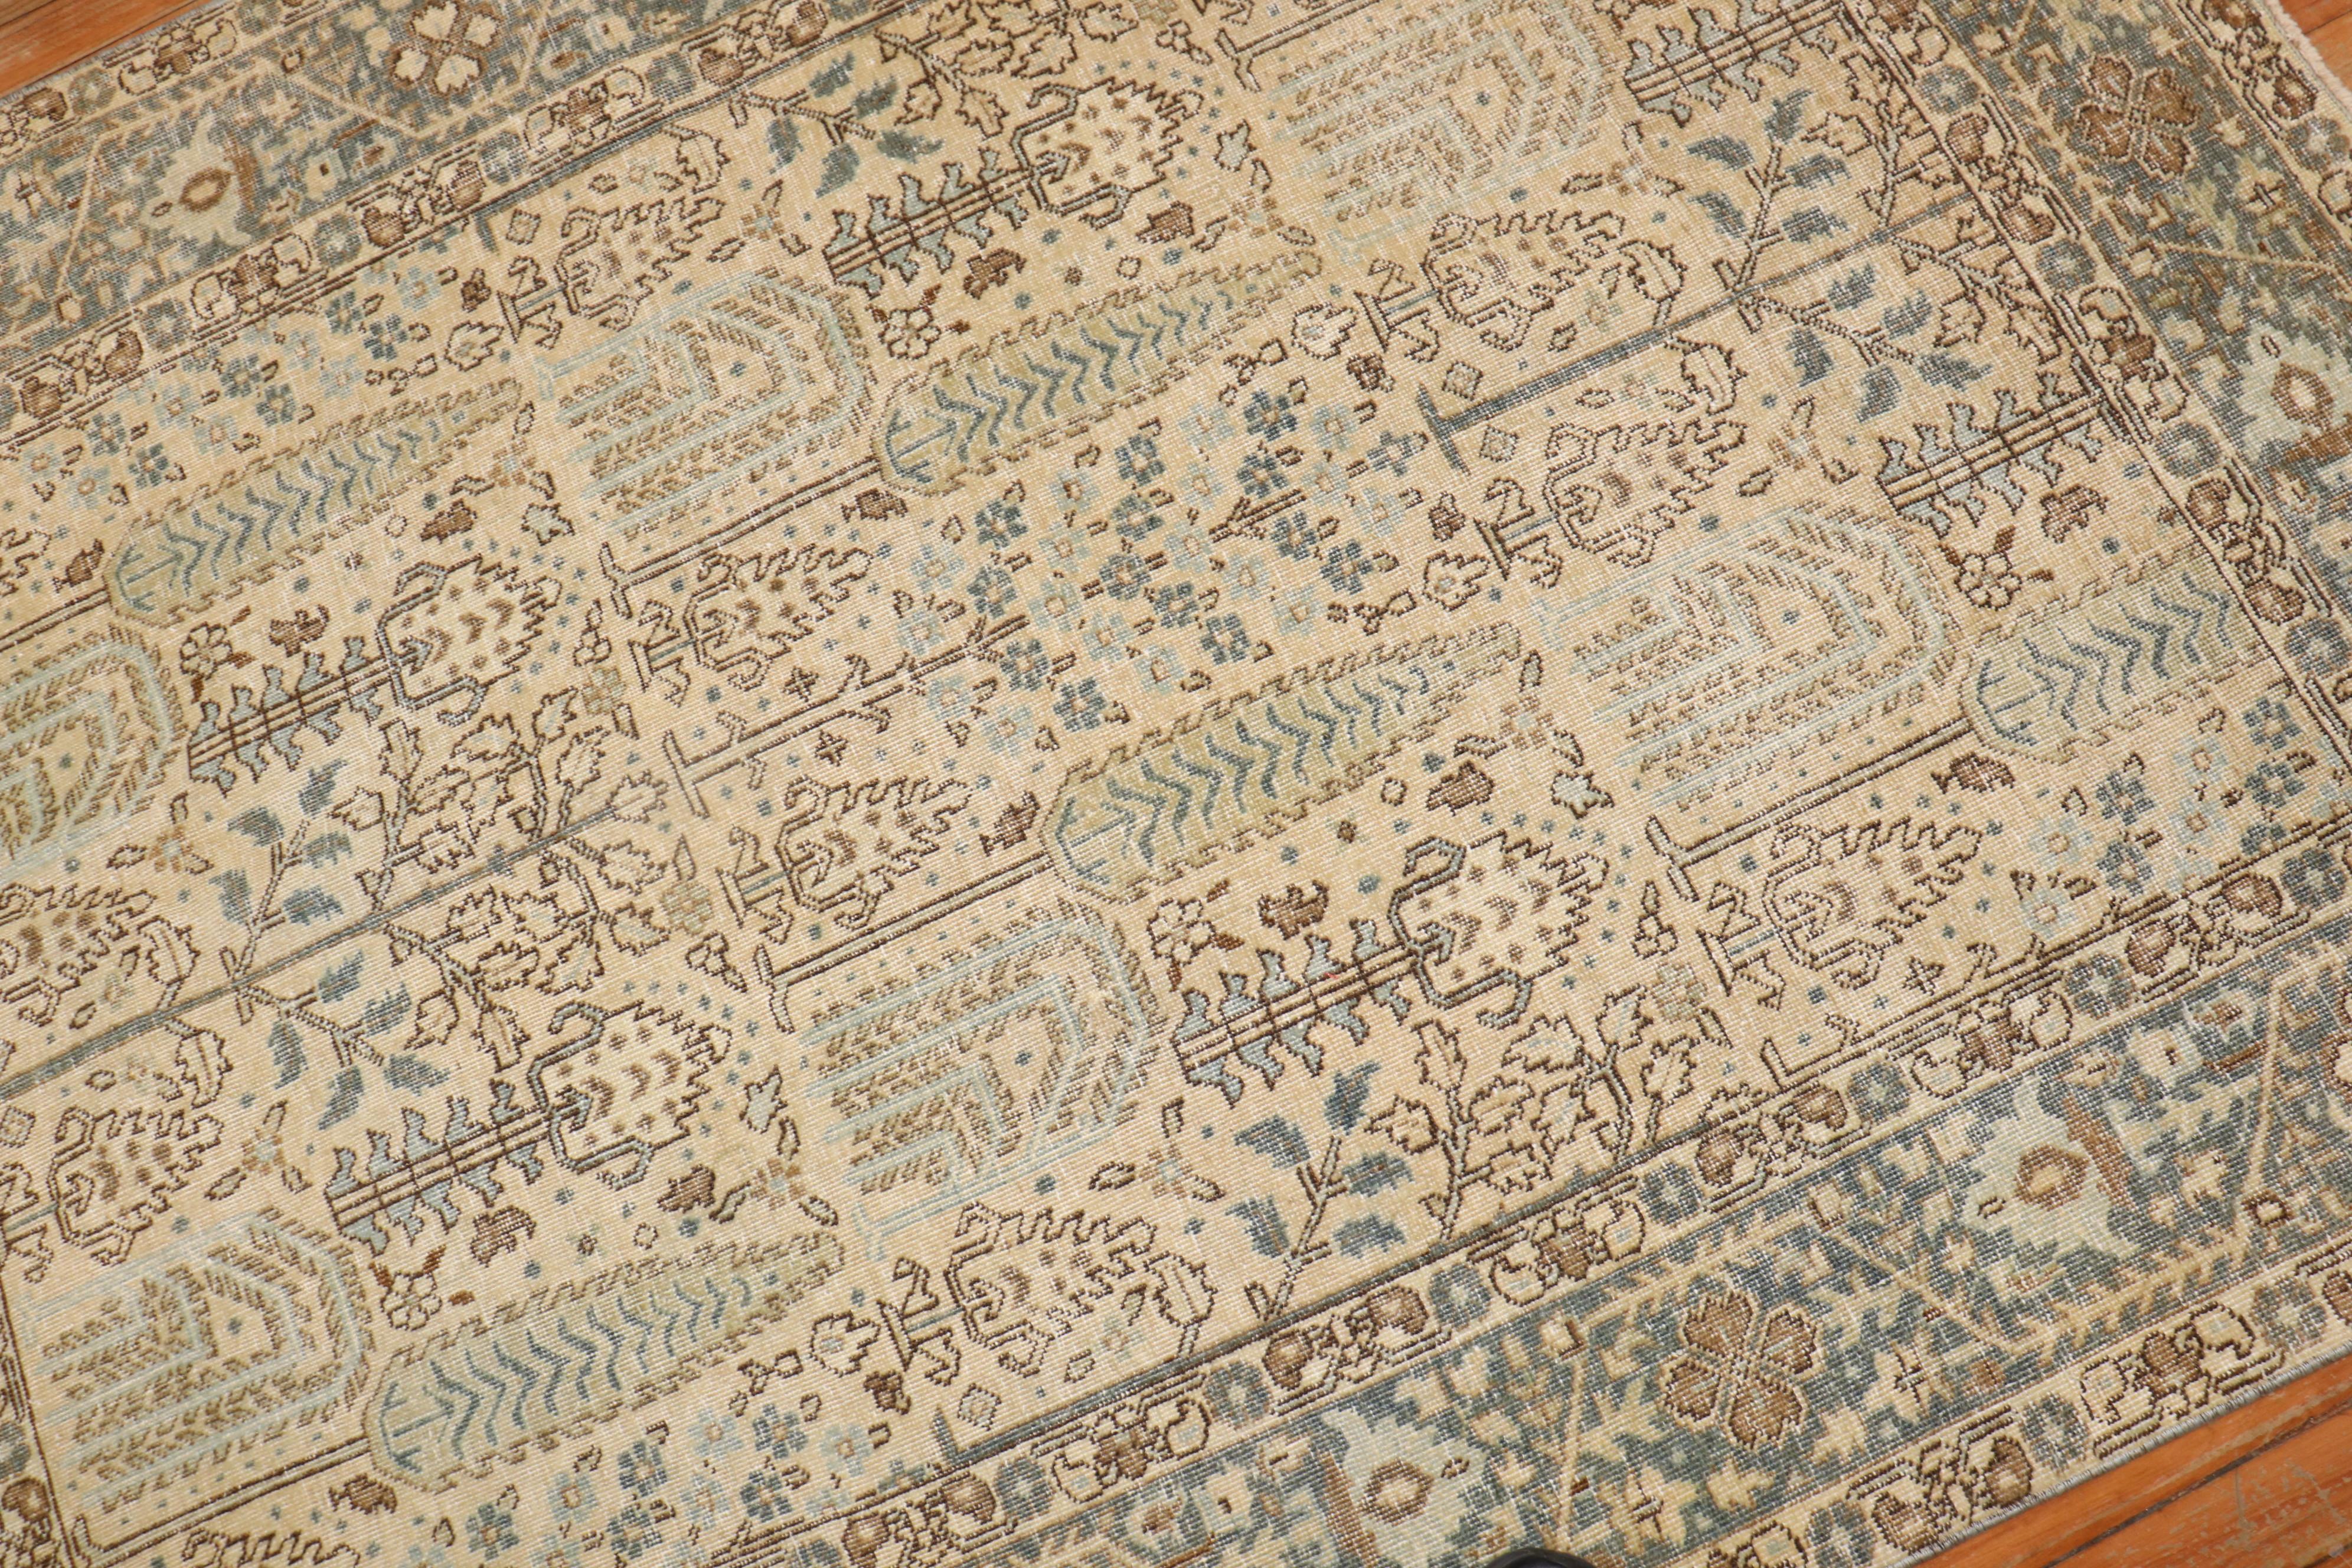 2. Quartal des Jahrhunderts  Persischer Täbriz-Teppich mit einem weinenden Lebensbaum auf einem neutralen Feld

Maße: 4'7